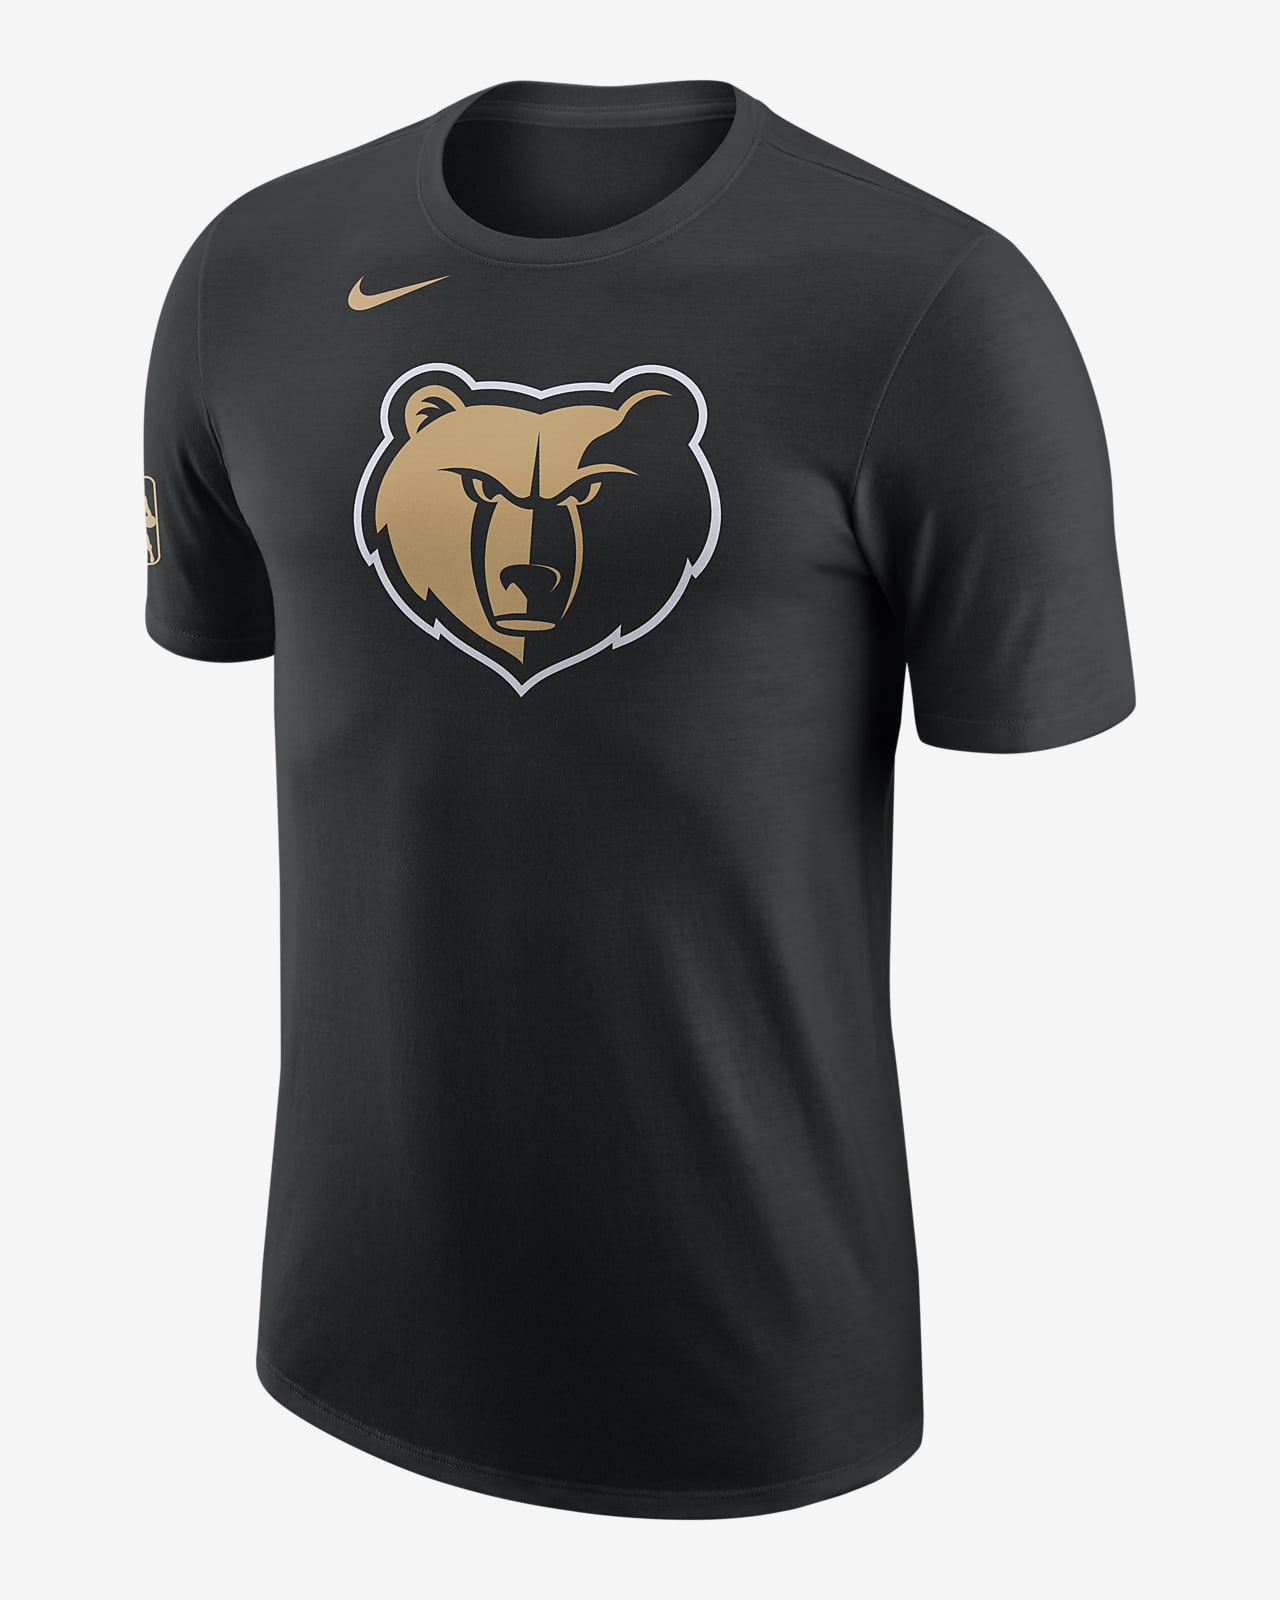 Memphis Grizzlies City Edition Camiseta Nike NBA - Hombre